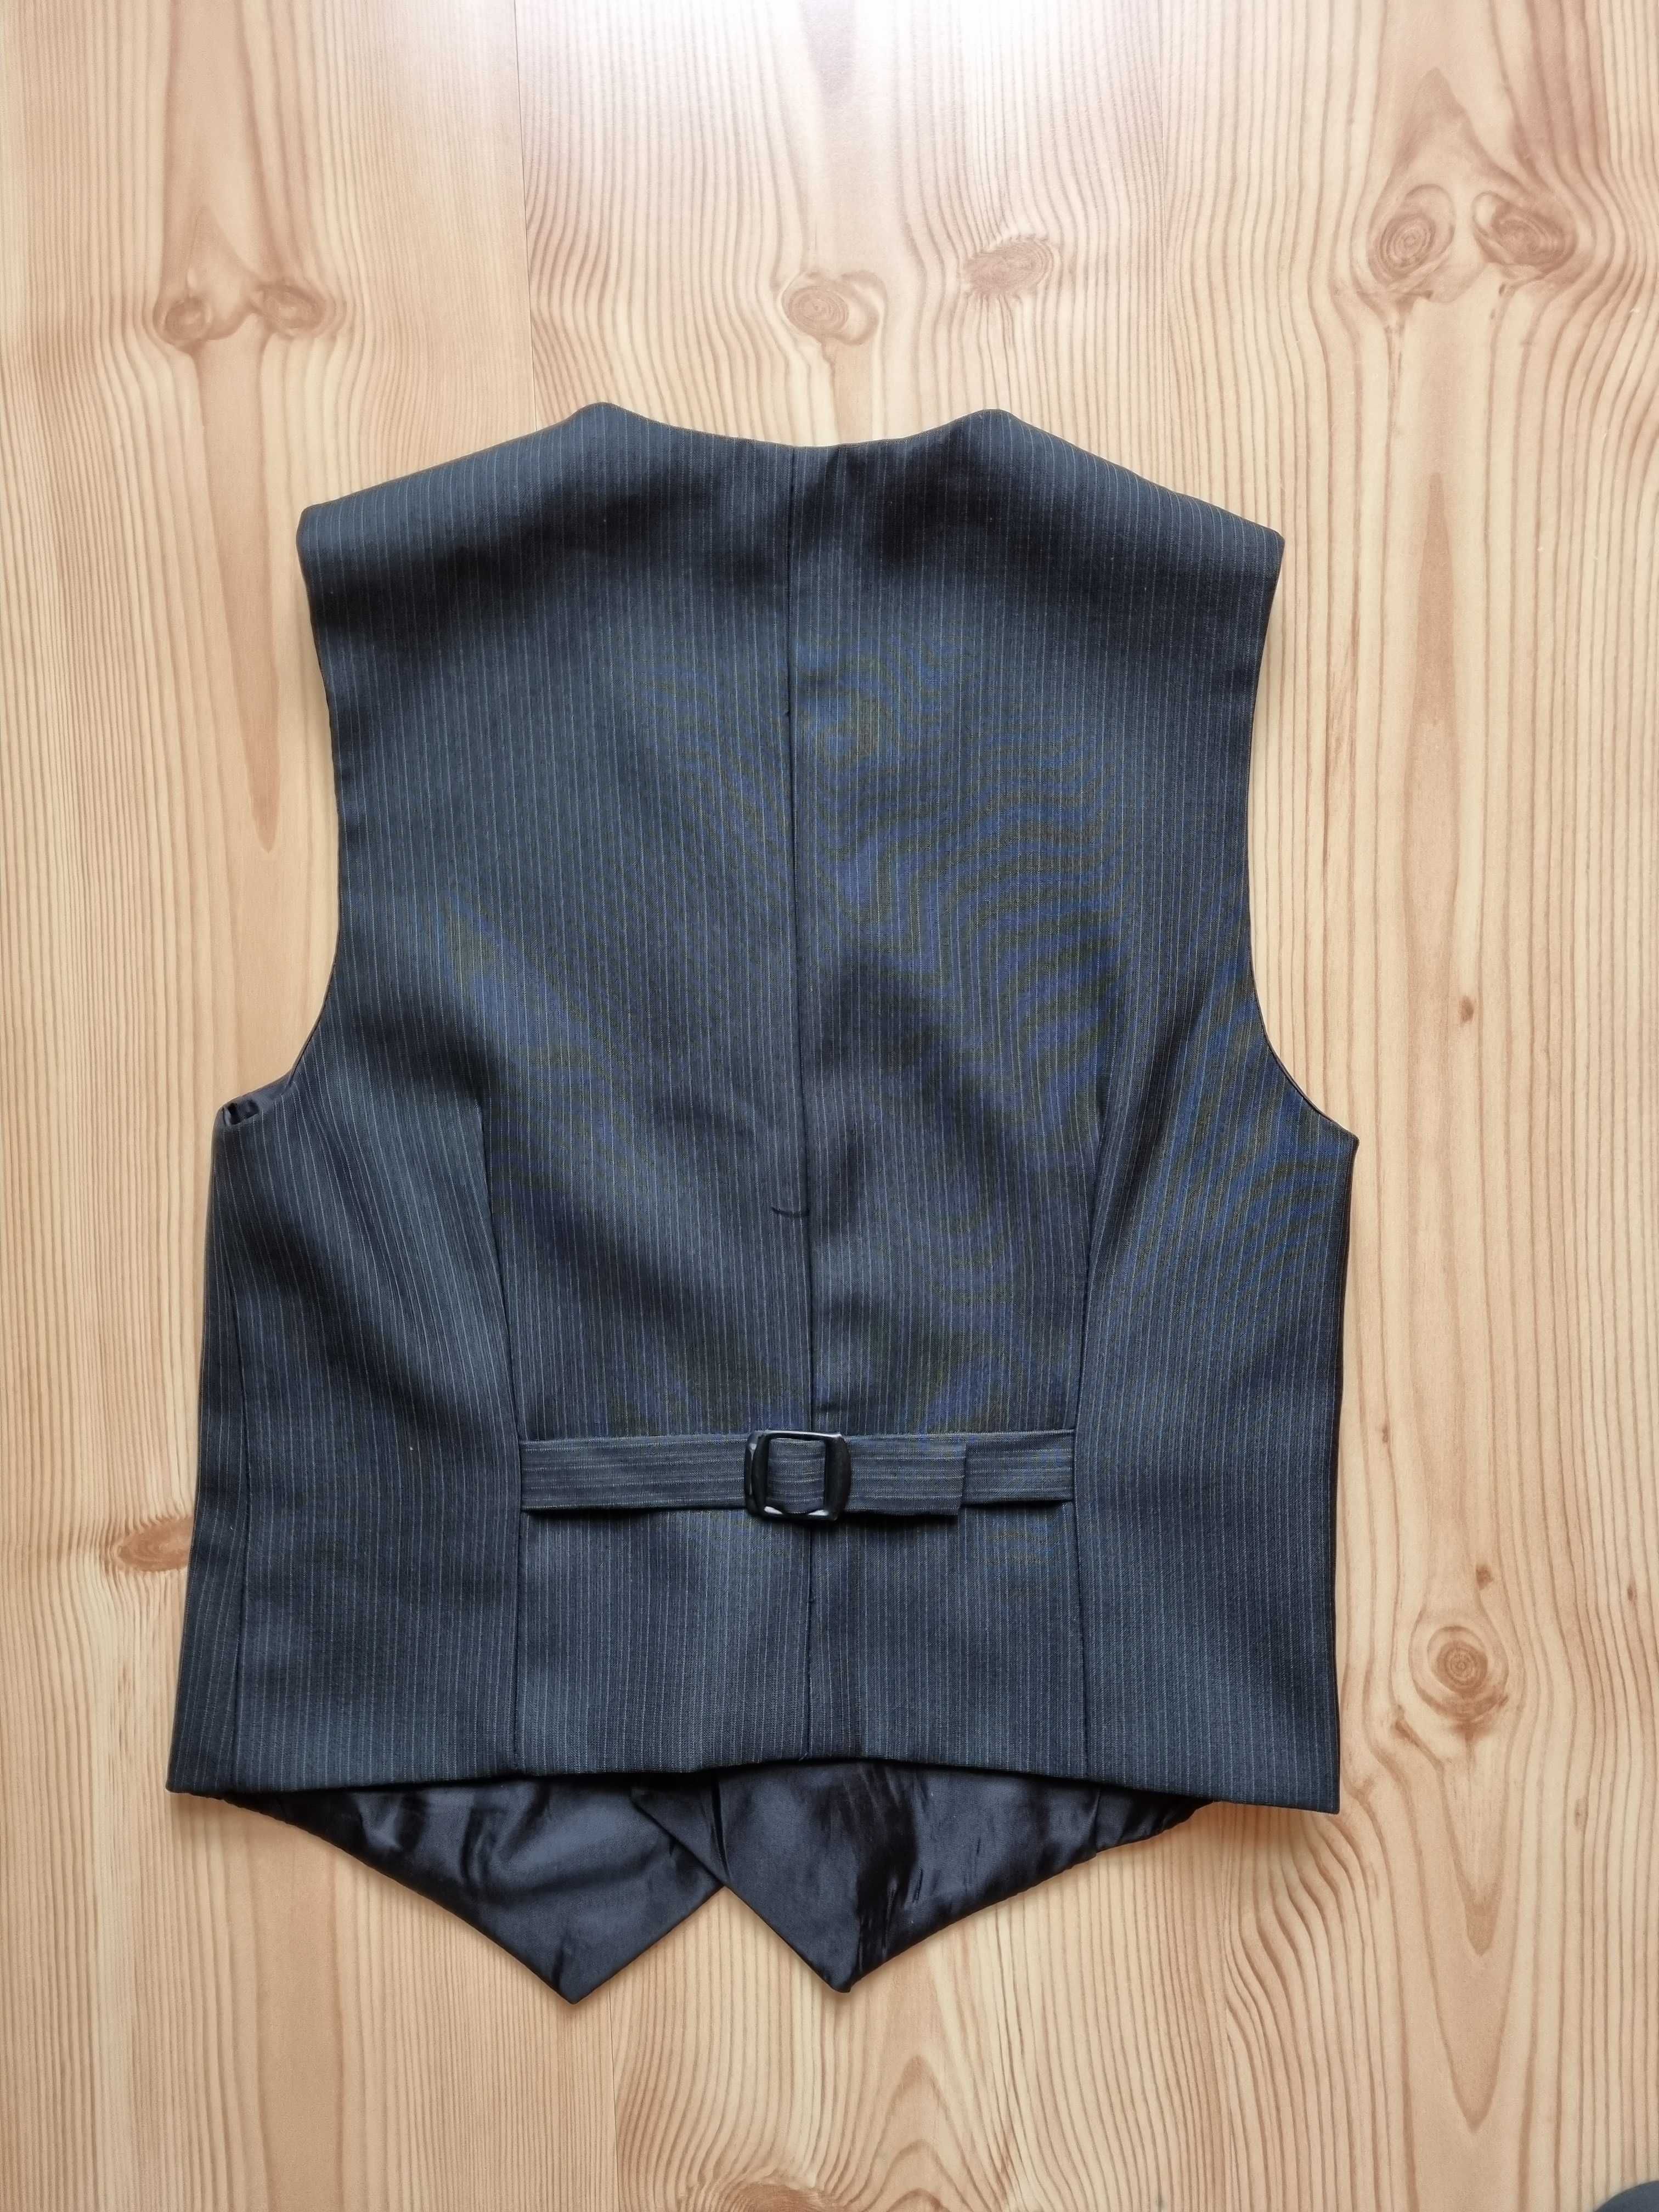 komplet garniturowy - kamizelka i spodnie dla dziecka w rozm 128